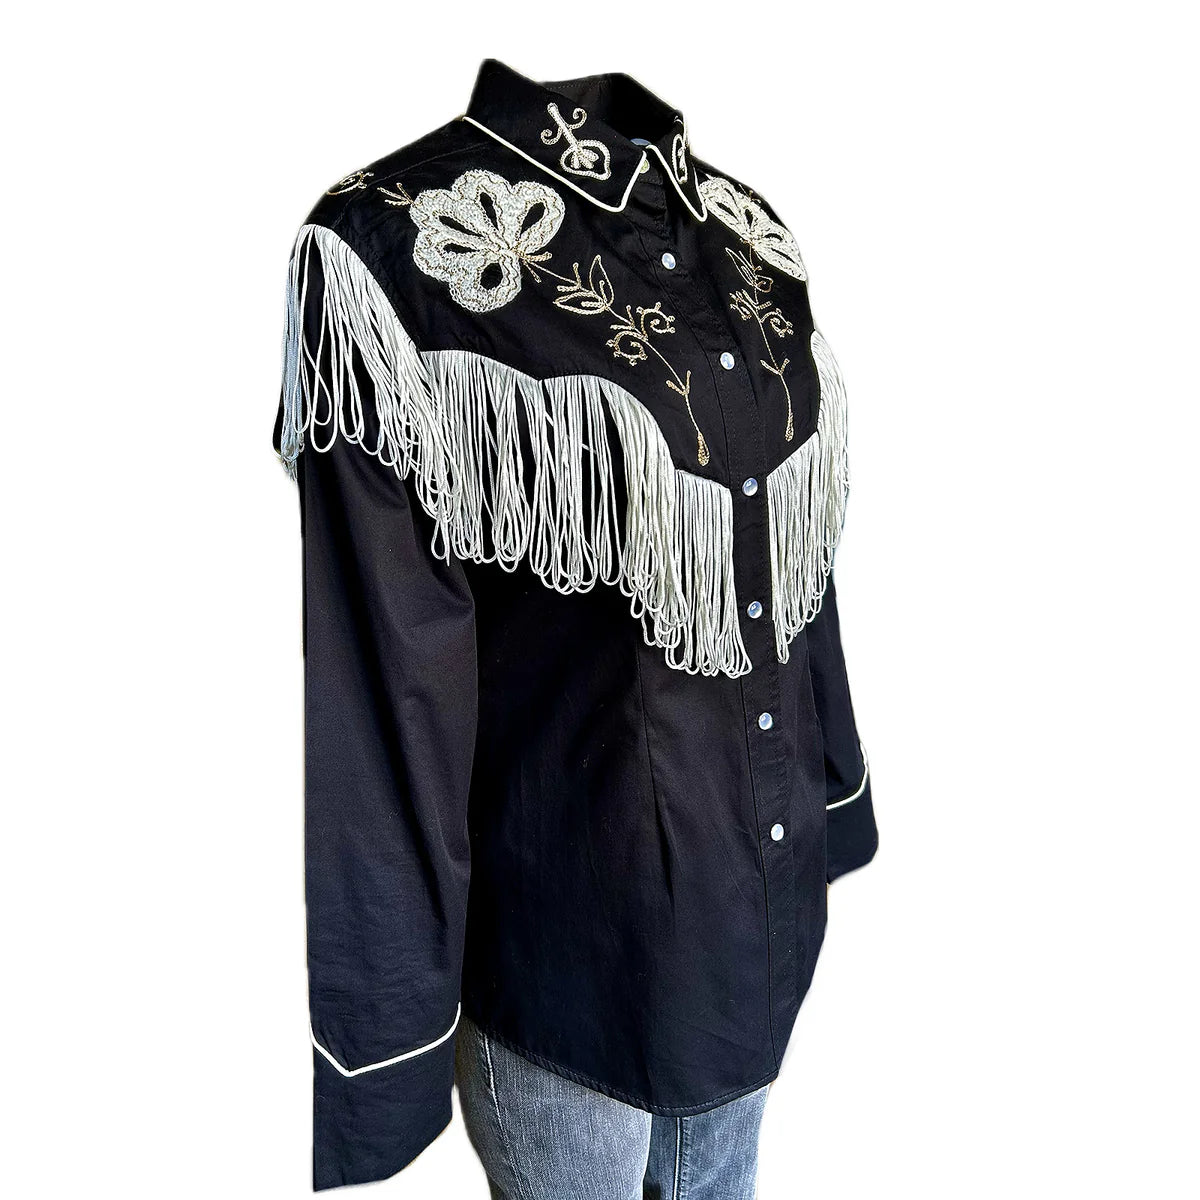 Vintage Inspired Western Shirt Ladies Rockmount Fringe Black Side